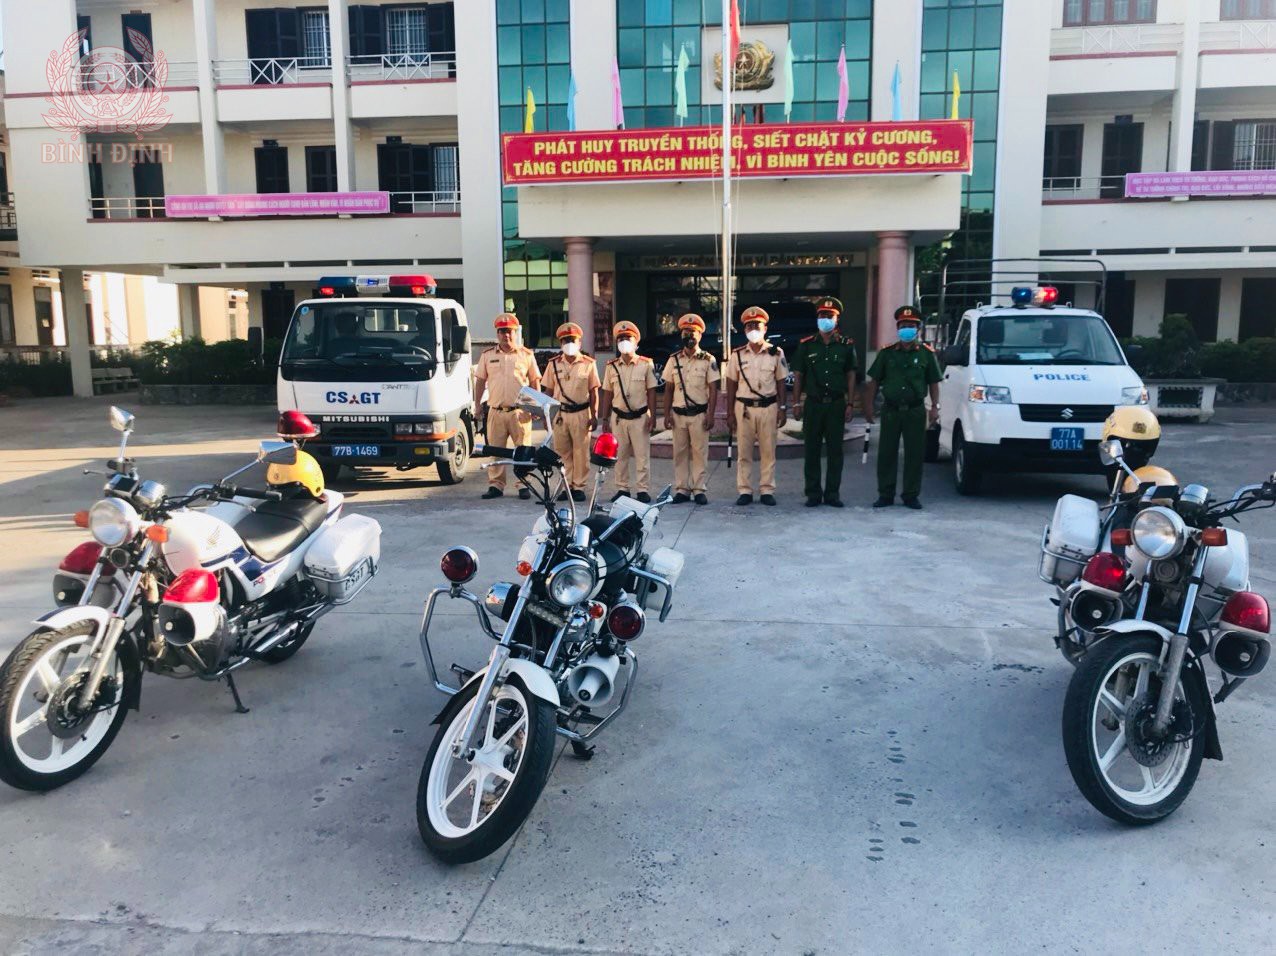 Công an thị xã An Nhơn ra quân thực hiện cao điểm kiểm tra, xử lý các hành vi vi phạm trật tự, an toàn giao thông